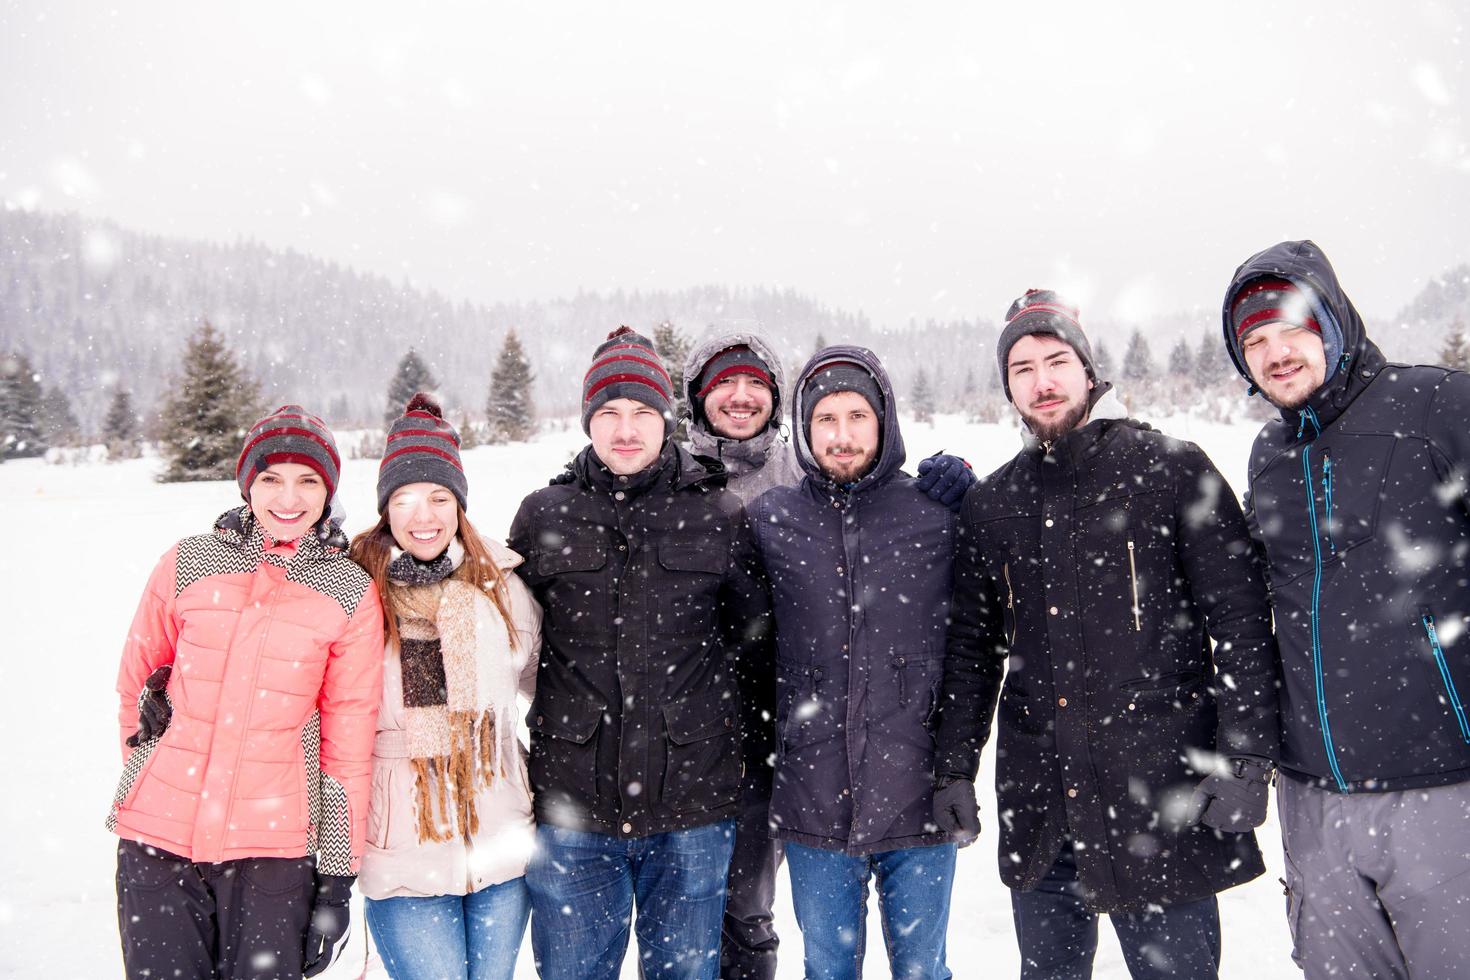 retrato de jovens do grupo na bela paisagem de inverno foto